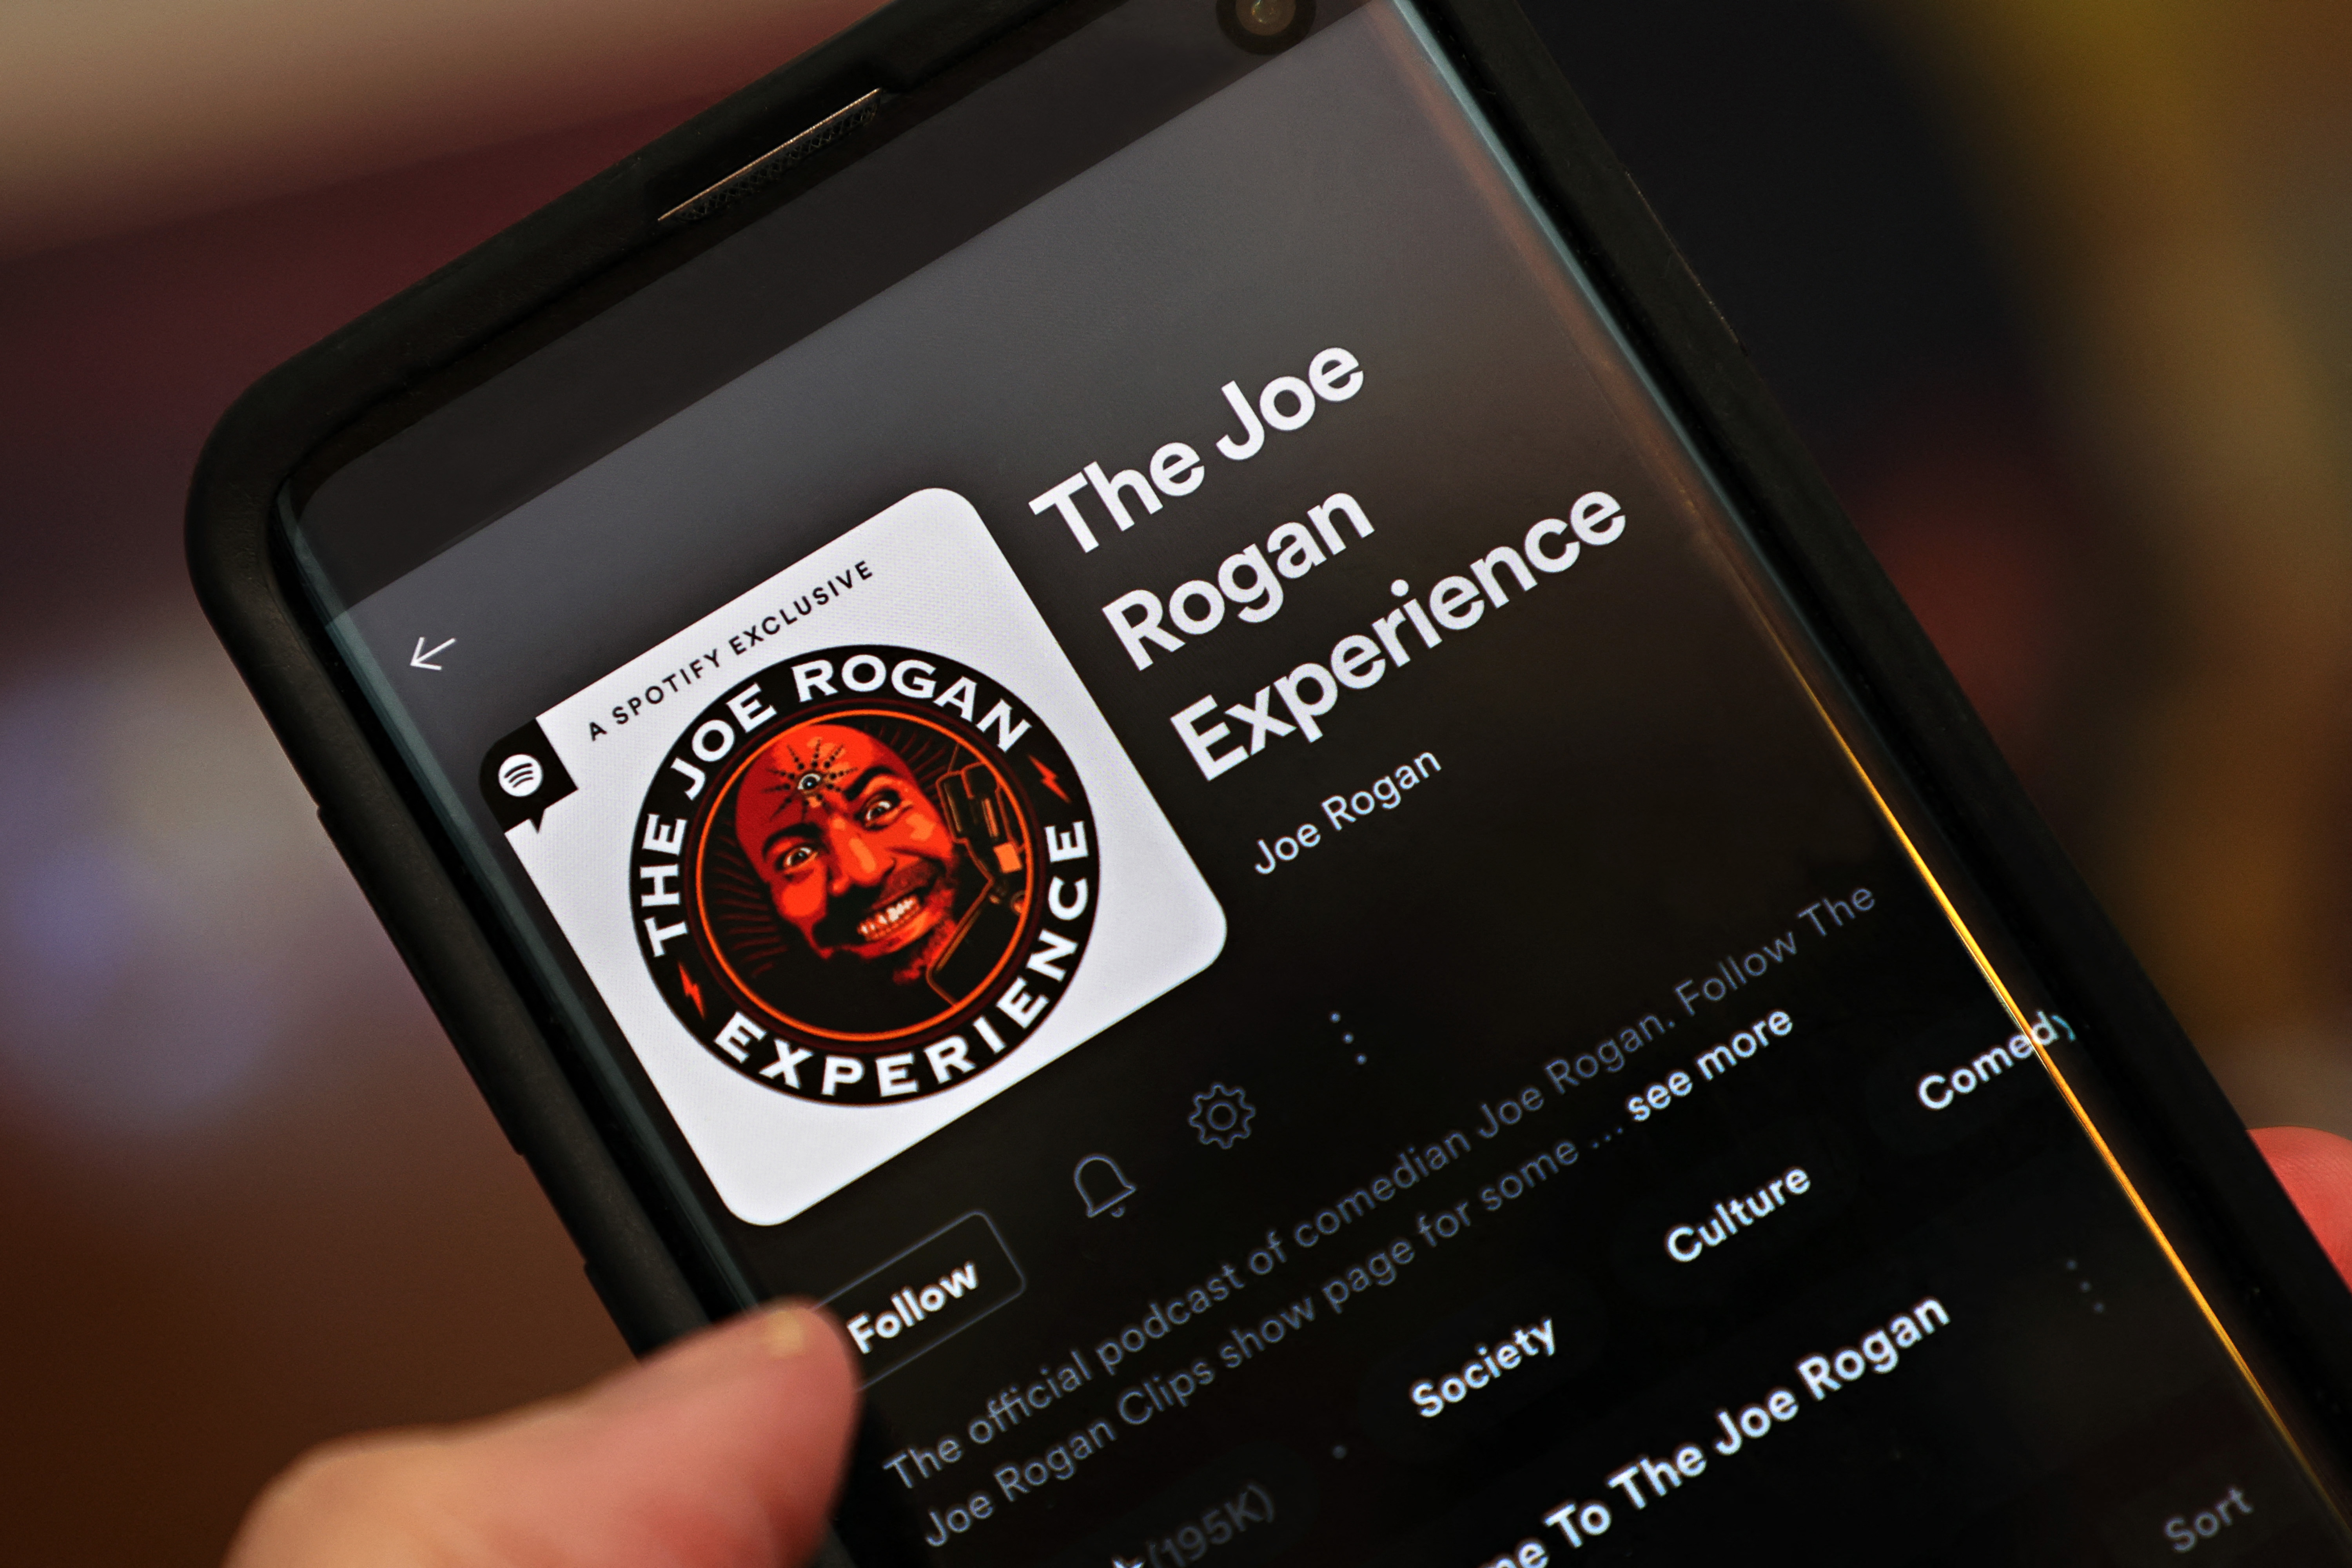 A Spotify leszedte Joe Rogan podcastjának több mint 100 epizódját